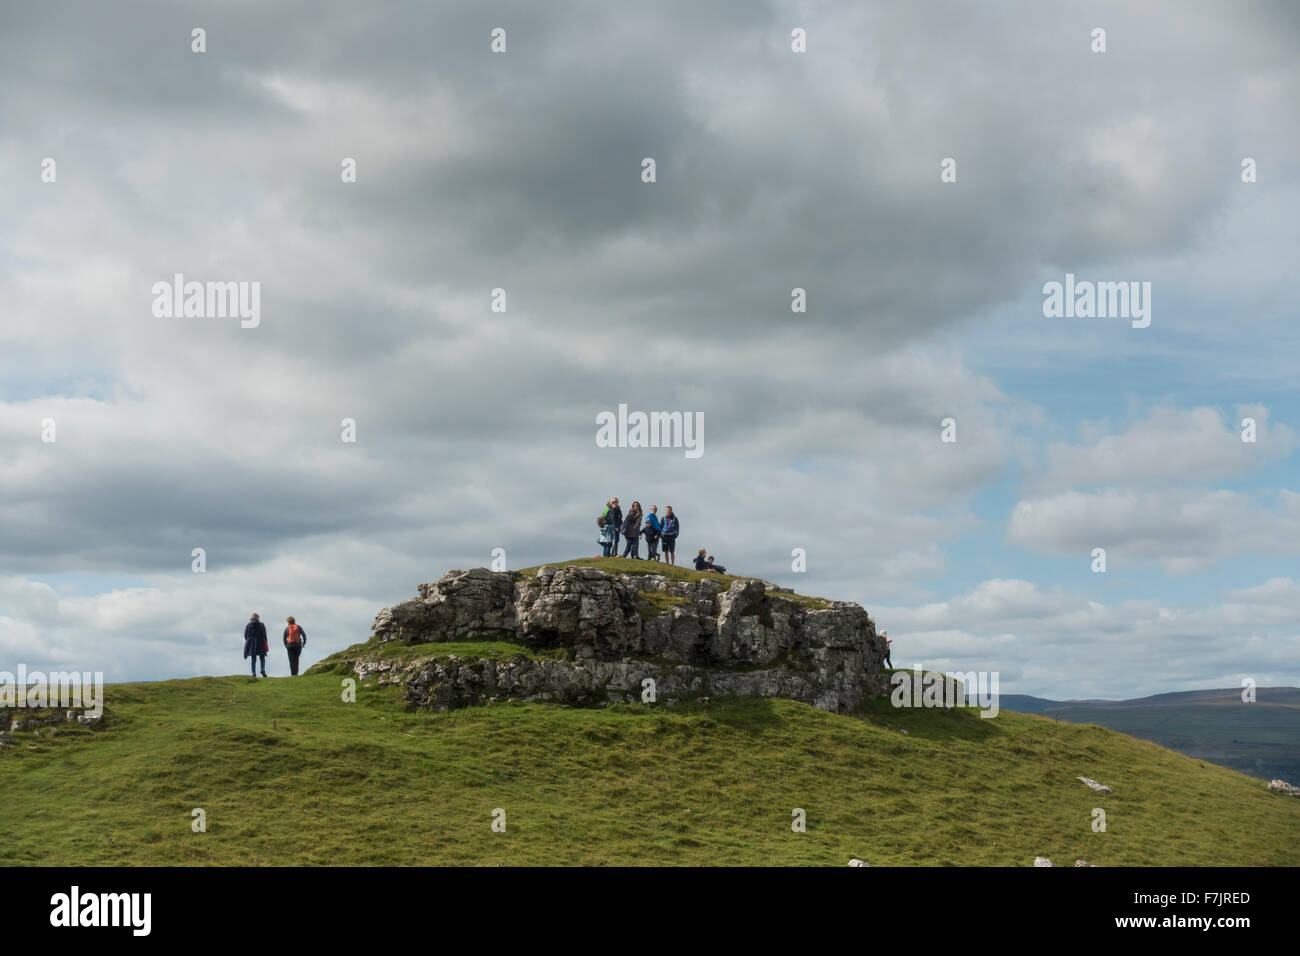 Yorkshire Dales upland, paisajes de piedra caliza - gente alta, en la parte superior de la Empanada (Conistone afloramiento rocoso) admirando el paisaje agreste. Inglaterra, GB, Reino Unido. Foto de stock